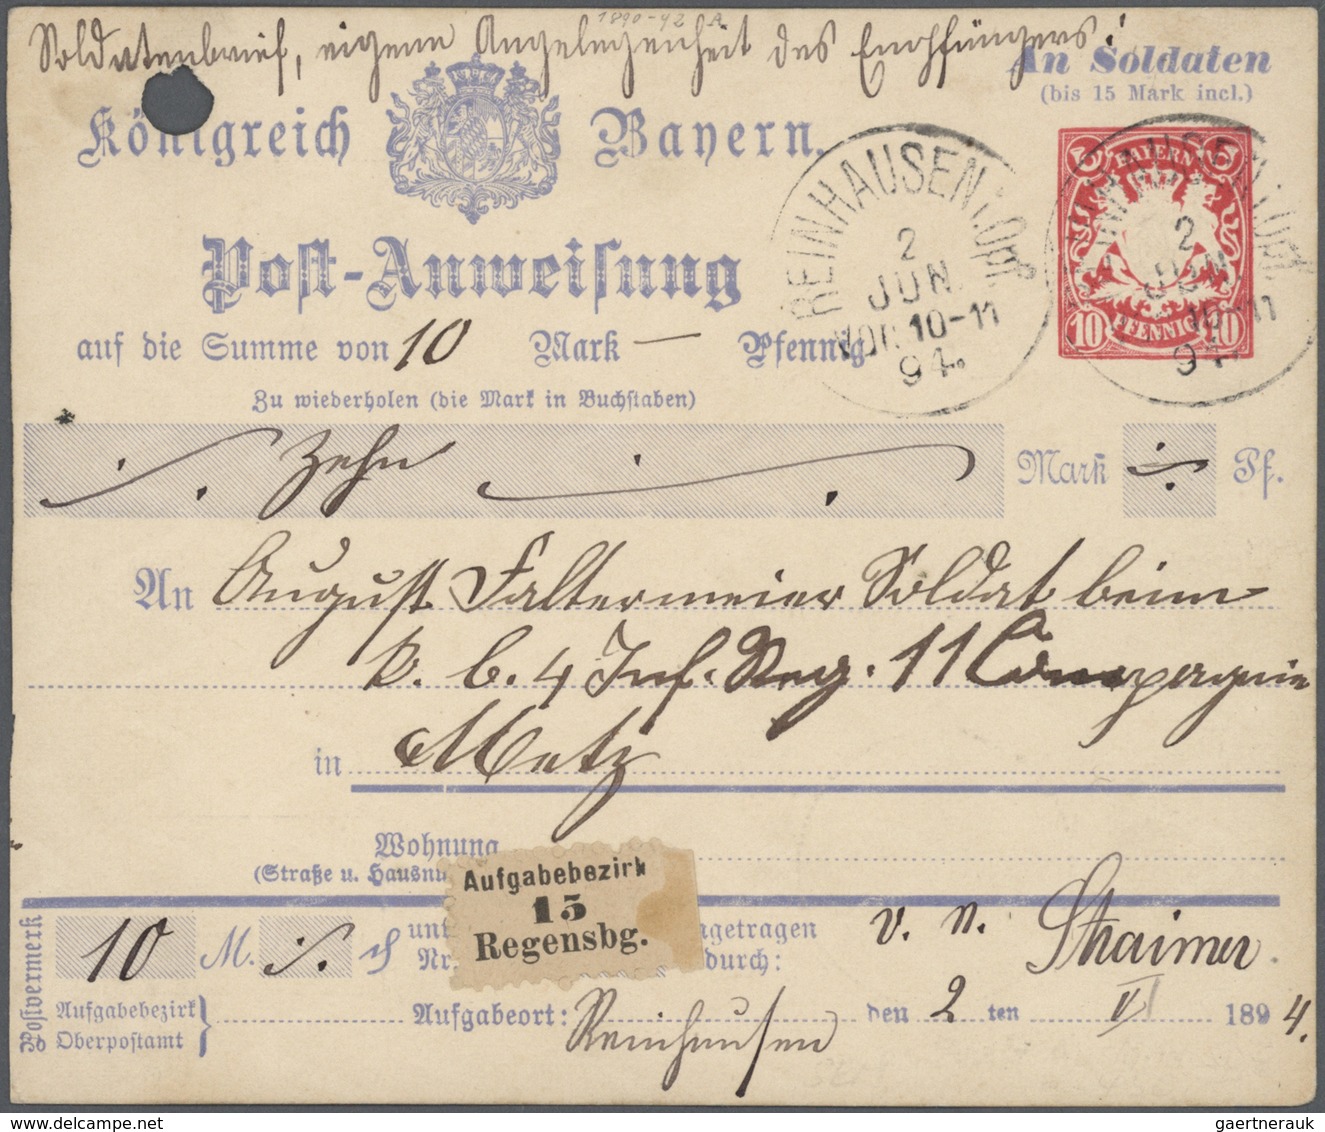 Bayern - Ganzsachen: 1870/1920, vielseitige Partie von über 100 meist gebrauchten Ganzsachen, vorwie